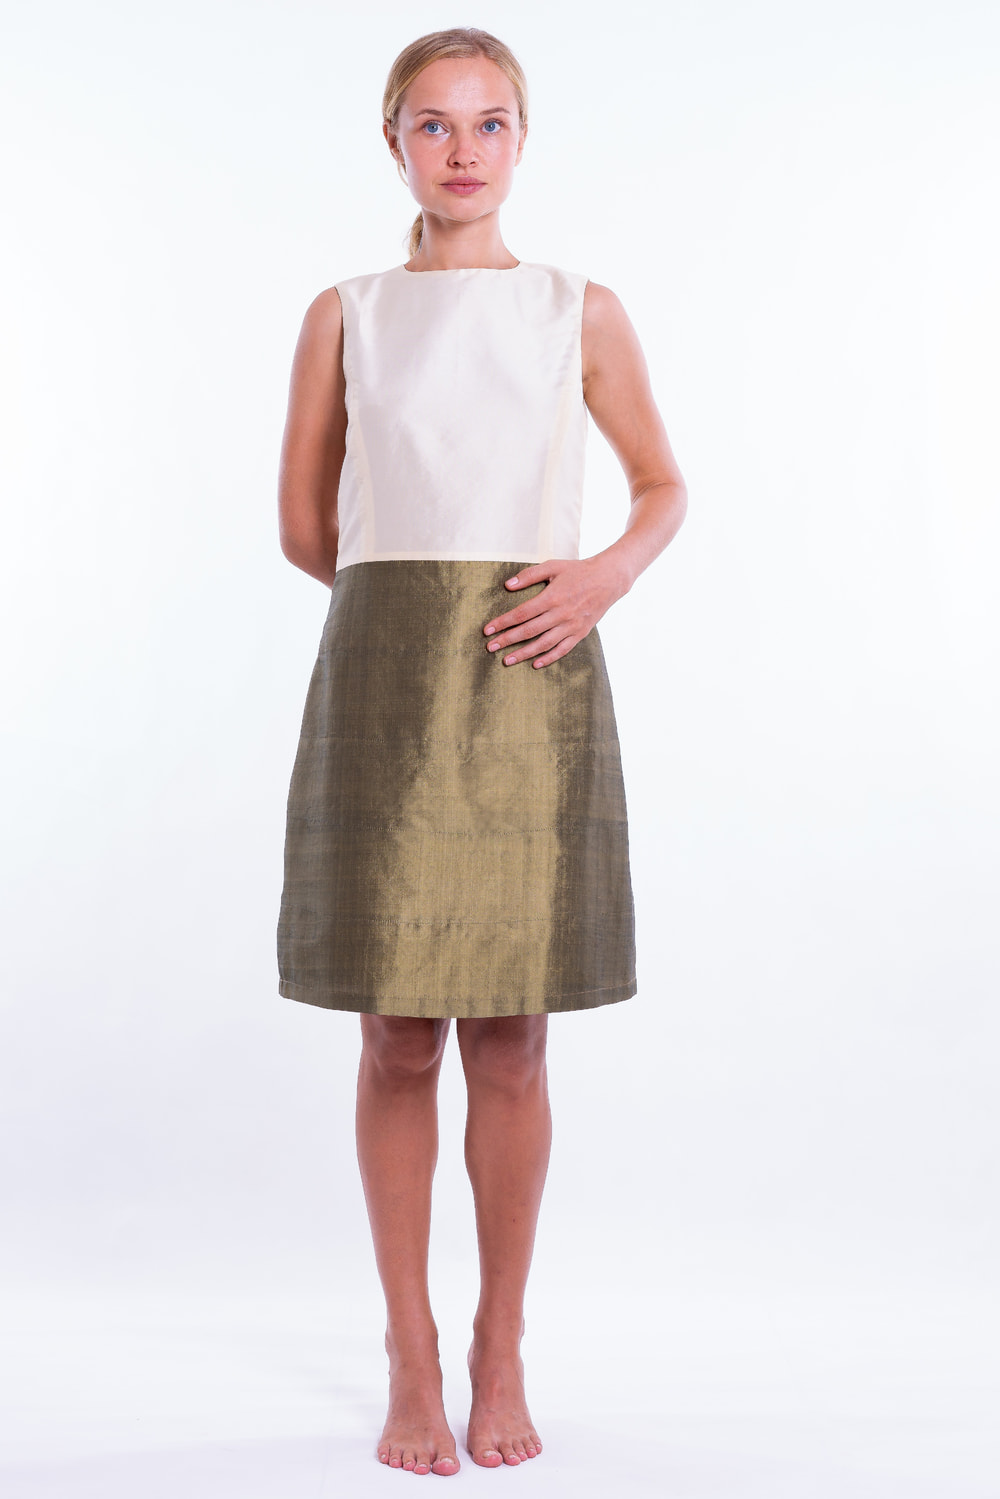 robe en soie naturelle bi-color, bronze et ivoire, sans manches, léger effet boule, doublée de soie fine, devant